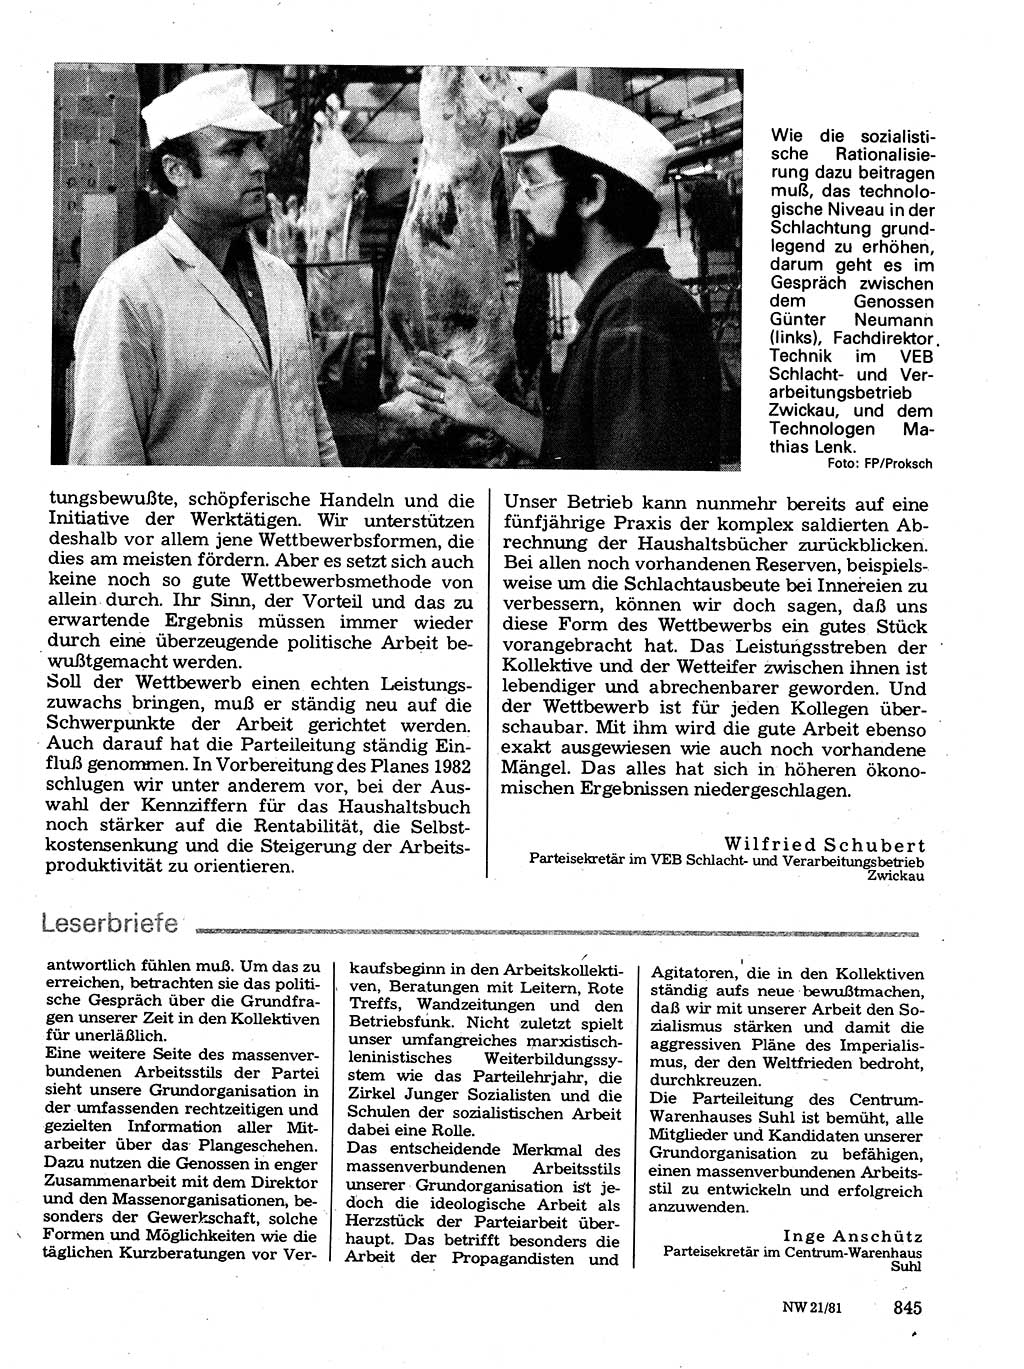 Neuer Weg (NW), Organ des Zentralkomitees (ZK) der SED (Sozialistische Einheitspartei Deutschlands) für Fragen des Parteilebens, 36. Jahrgang [Deutsche Demokratische Republik (DDR)] 1981, Seite 845 (NW ZK SED DDR 1981, S. 845)